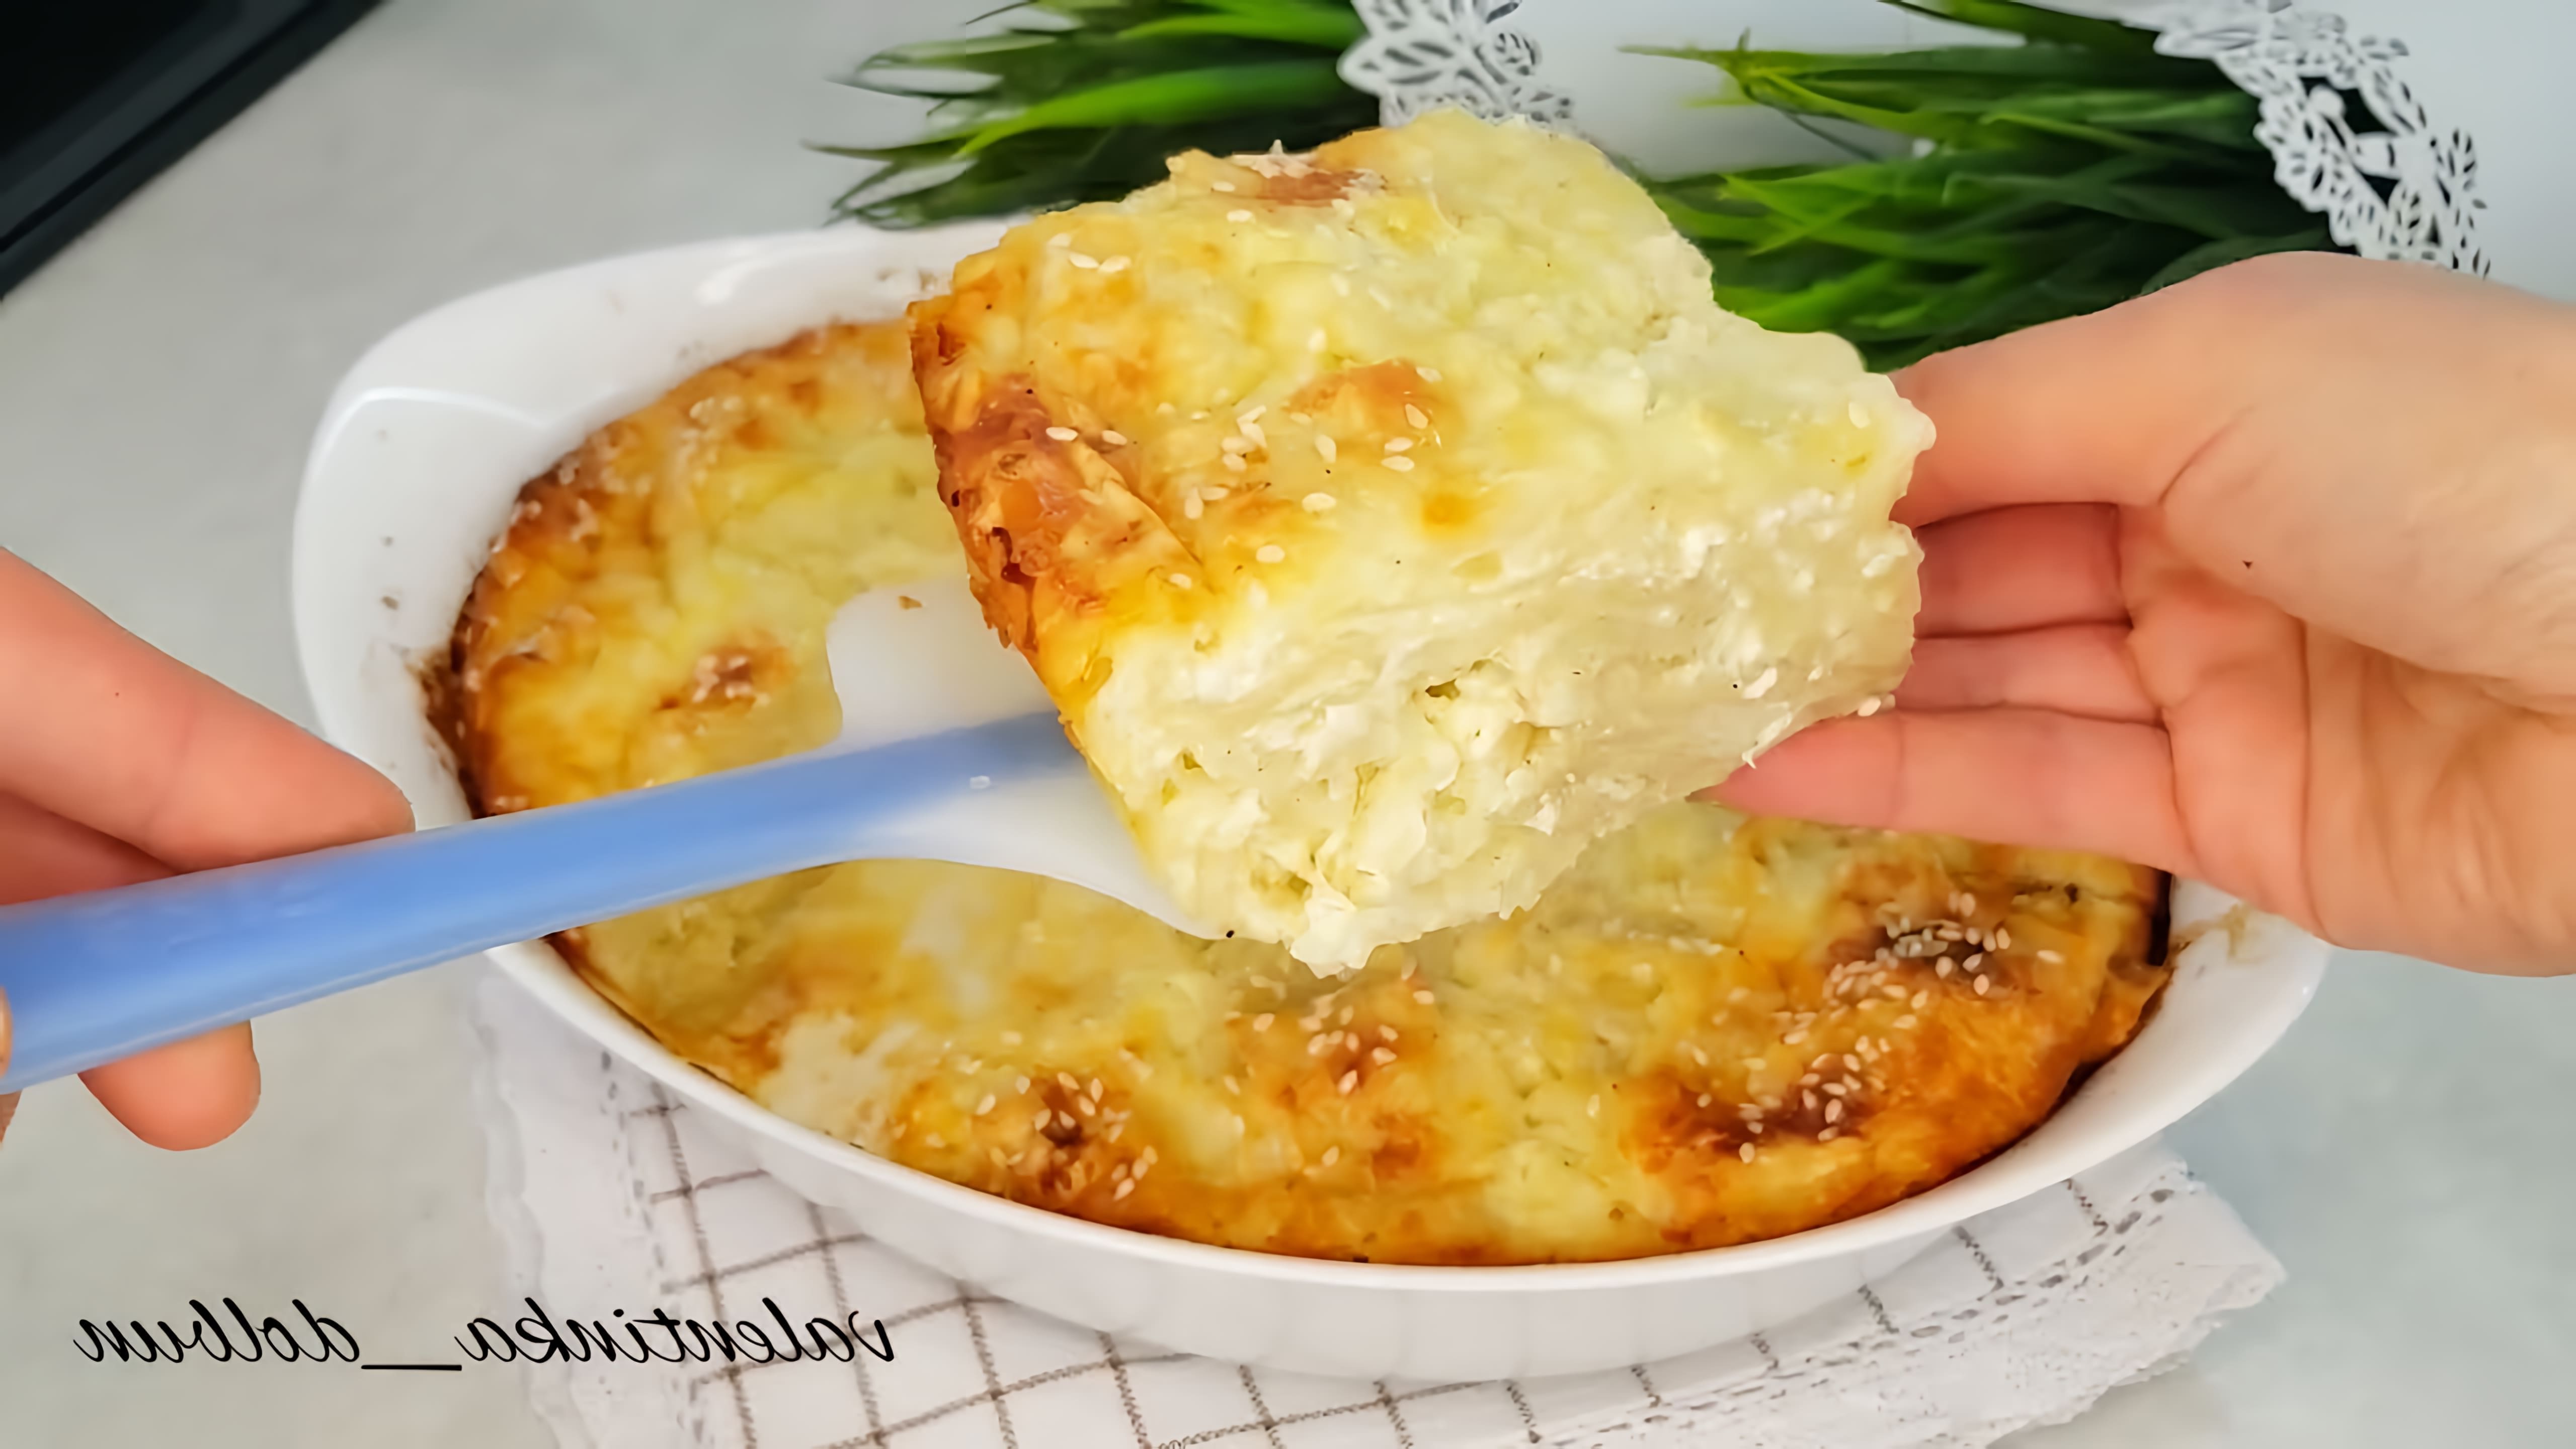 В этом видео демонстрируется рецепт ленивой ачмы - блюда из лаваша, творога и сыра